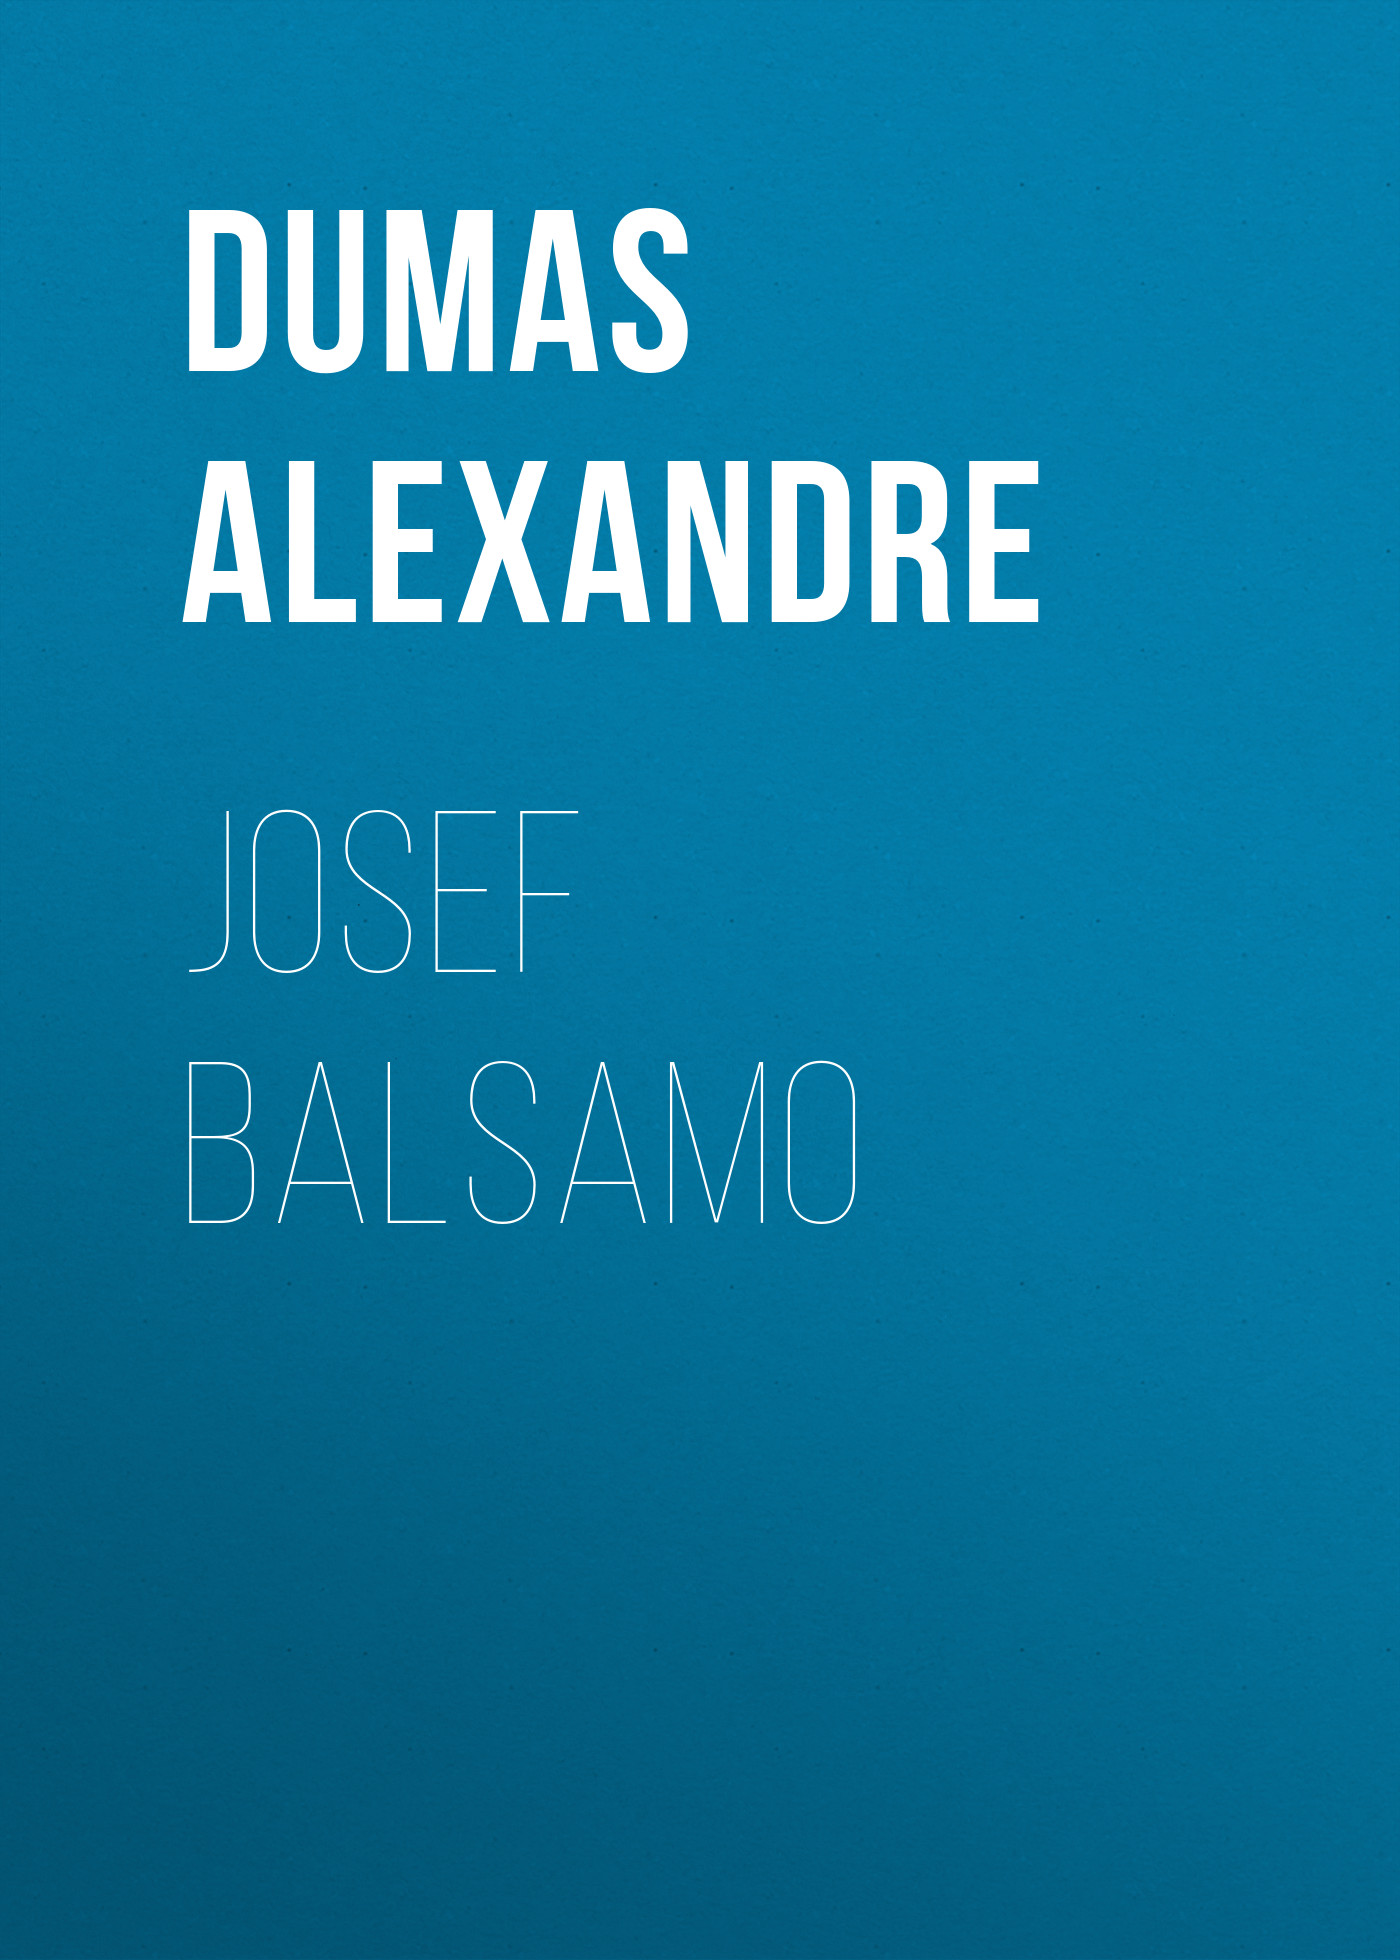 Книга Josef Balsamo из серии , созданная Alexandre Dumas, может относится к жанру Литература 19 века, Зарубежная старинная литература, Зарубежная классика. Стоимость электронной книги Josef Balsamo с идентификатором 25203383 составляет 0 руб.